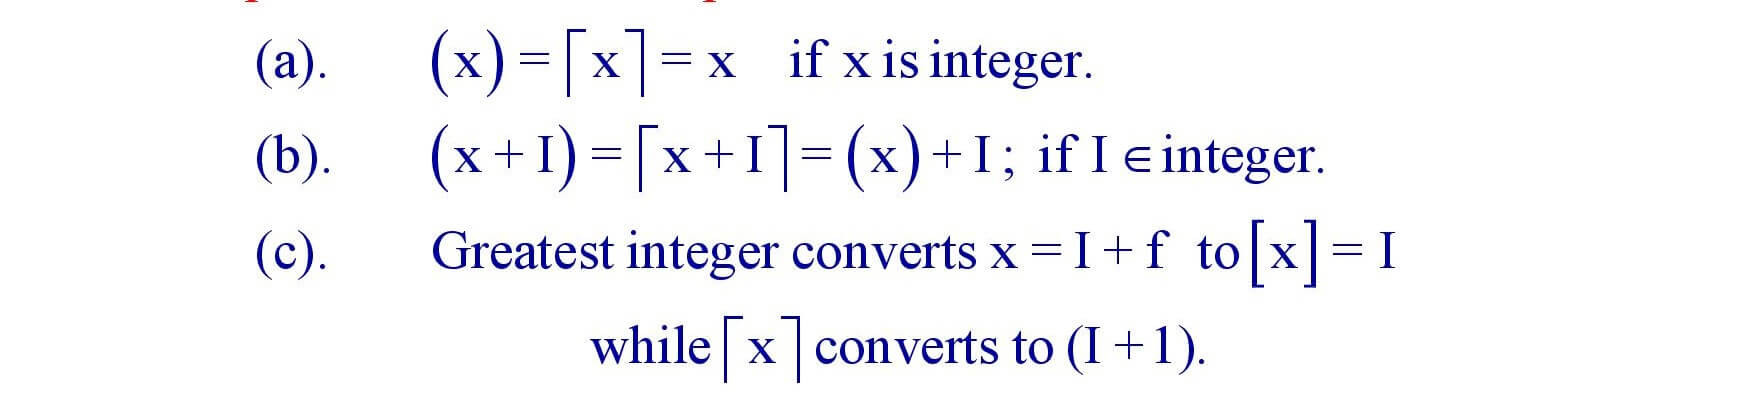 Properties of fractional part of x